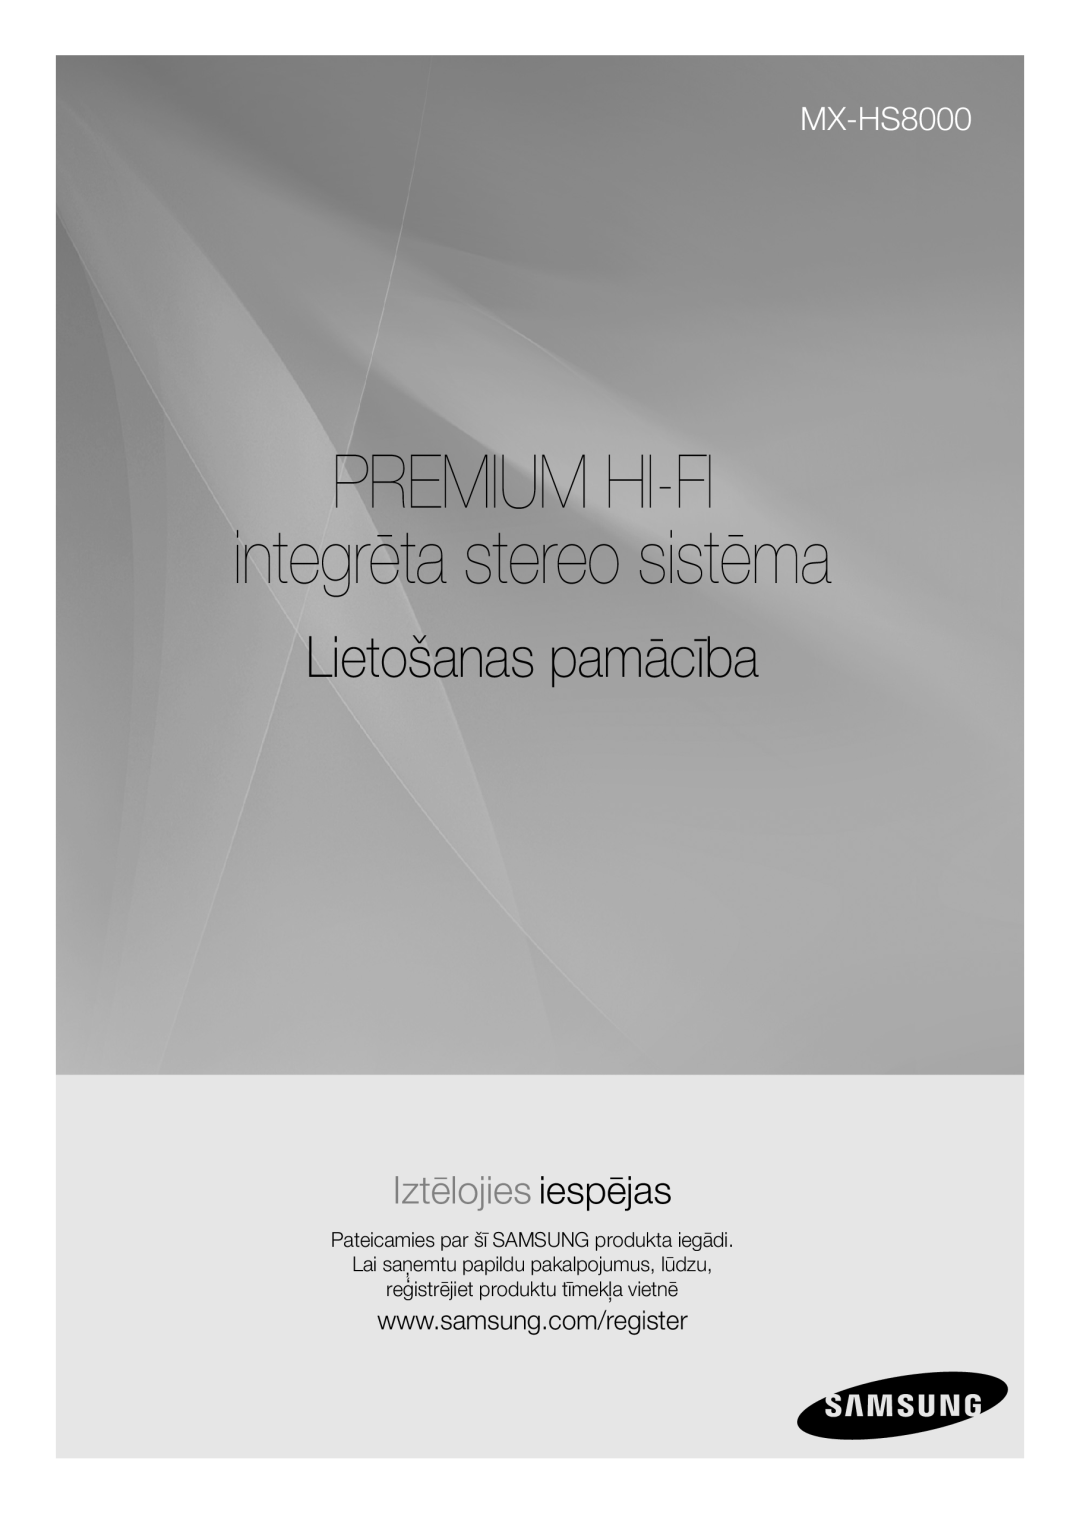 Samsung MX-HS8000/EN manual PREMIUM HI-FI integrēta stereo sistēma Lietošanas pamācība, Iztēlojies iespējas 